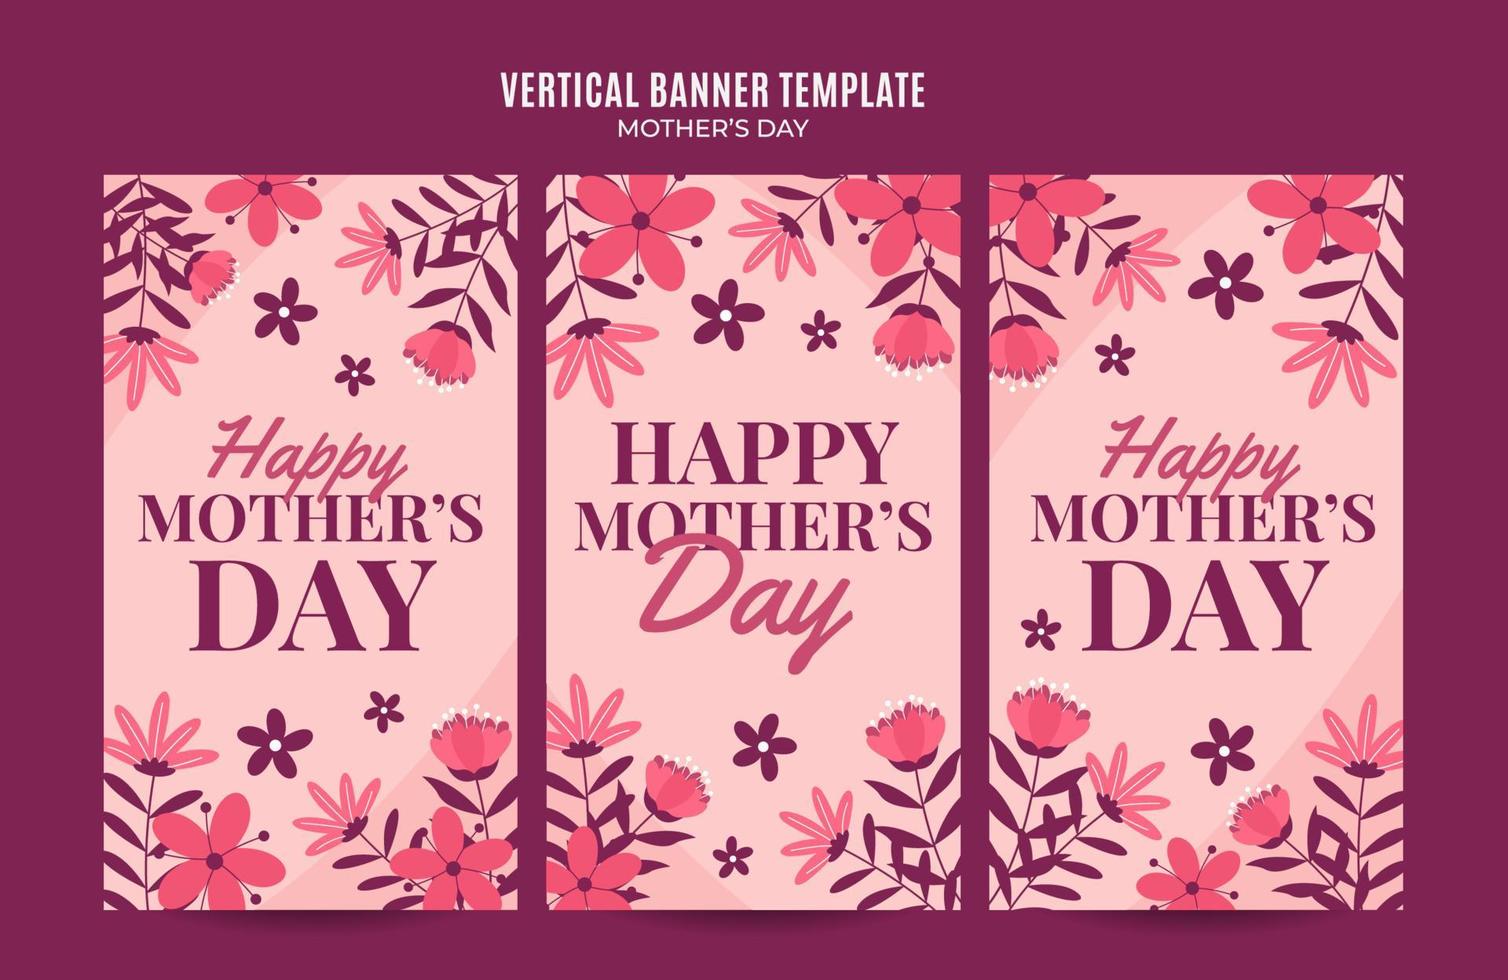 banner web retro del día de la madre feliz para afiches verticales de redes sociales, banner, área espacial y fondo vector